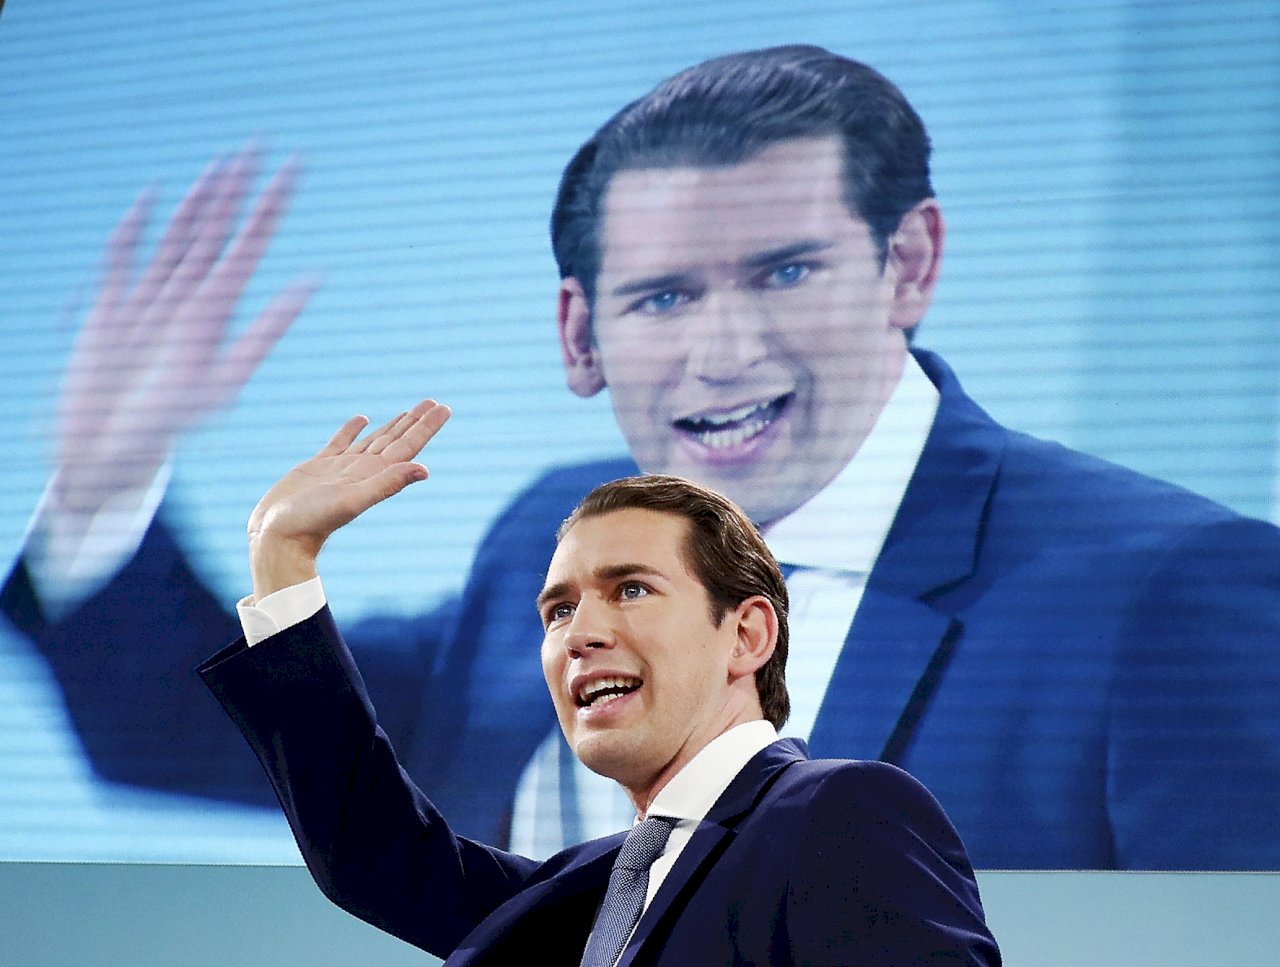 奧地利國會改選初步預測 人民黨得票率37%居首